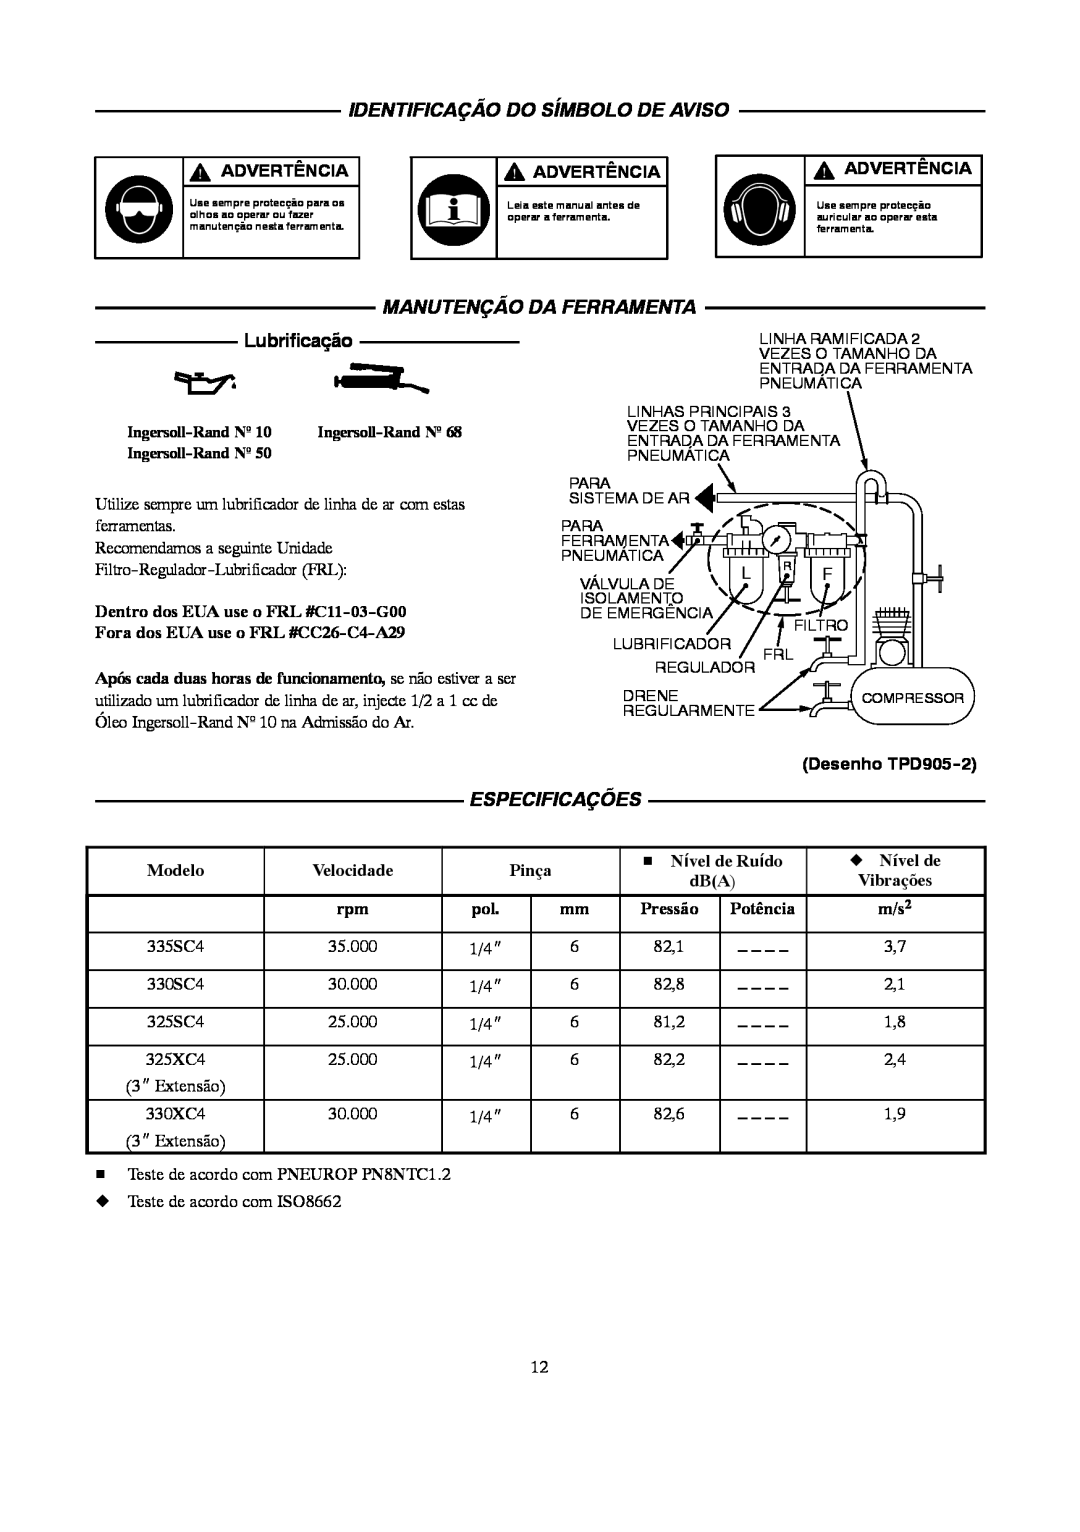 Ingersoll-Rand 4578217 manual Identificação Do Símbolo De Aviso, Manutenção Da Ferramenta, Lubrificação, Especificações 